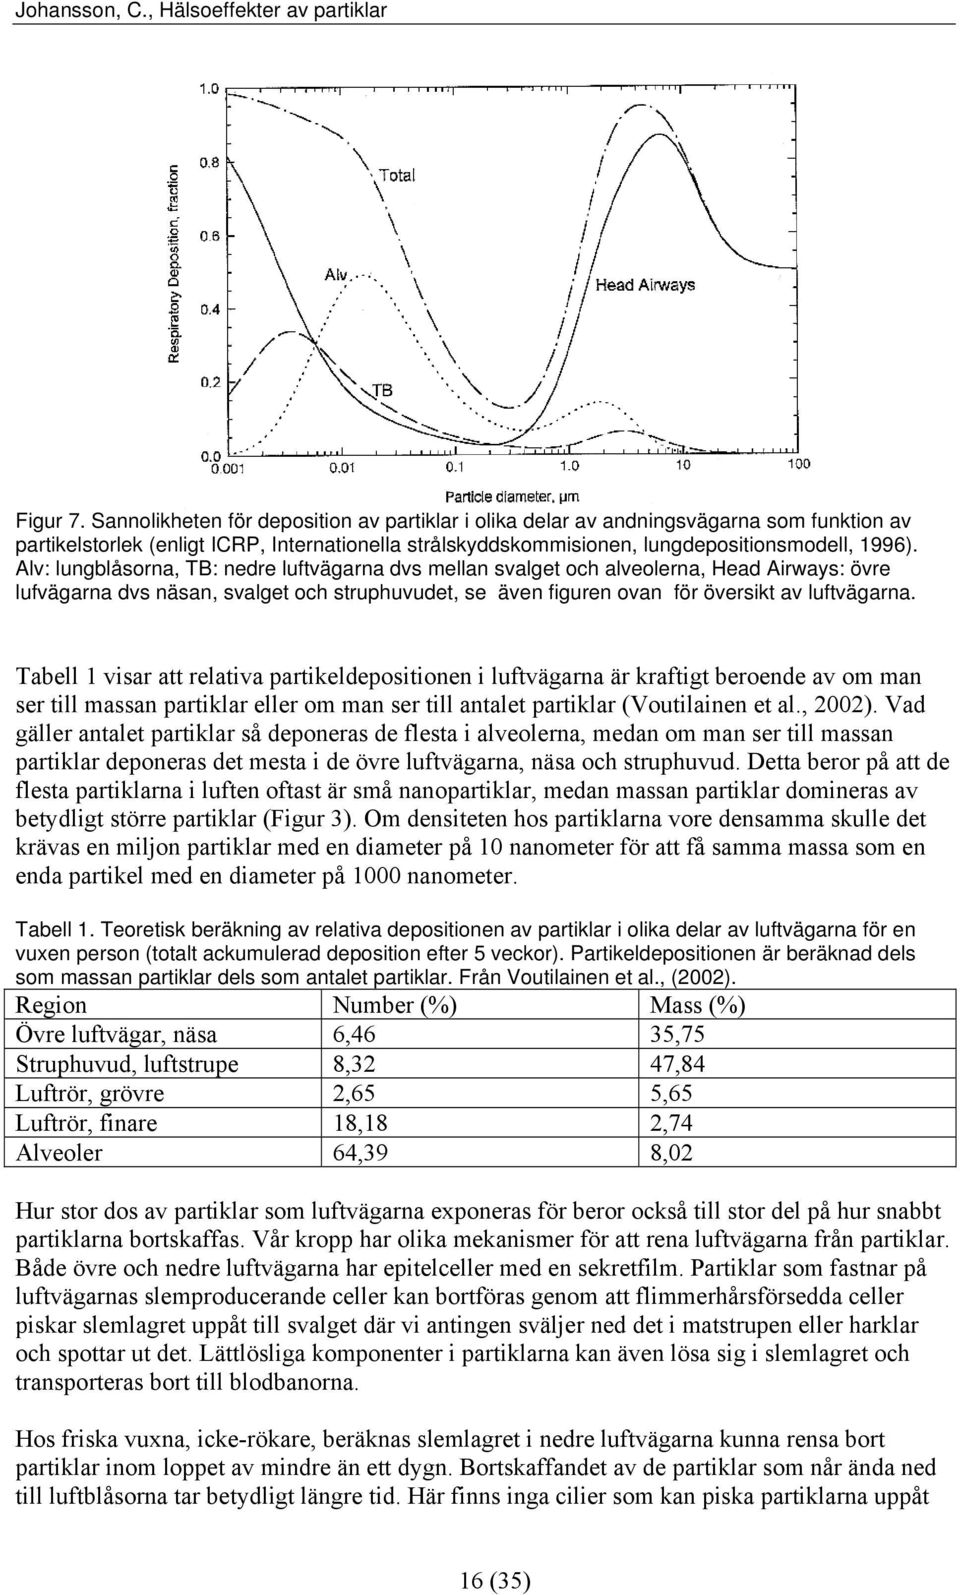 Tabell 1 visar att relativa partikeldepositionen i luftvägarna är kraftigt beroende av om man ser till massan partiklar eller om man ser till antalet partiklar (Voutilainen et al., 2002).